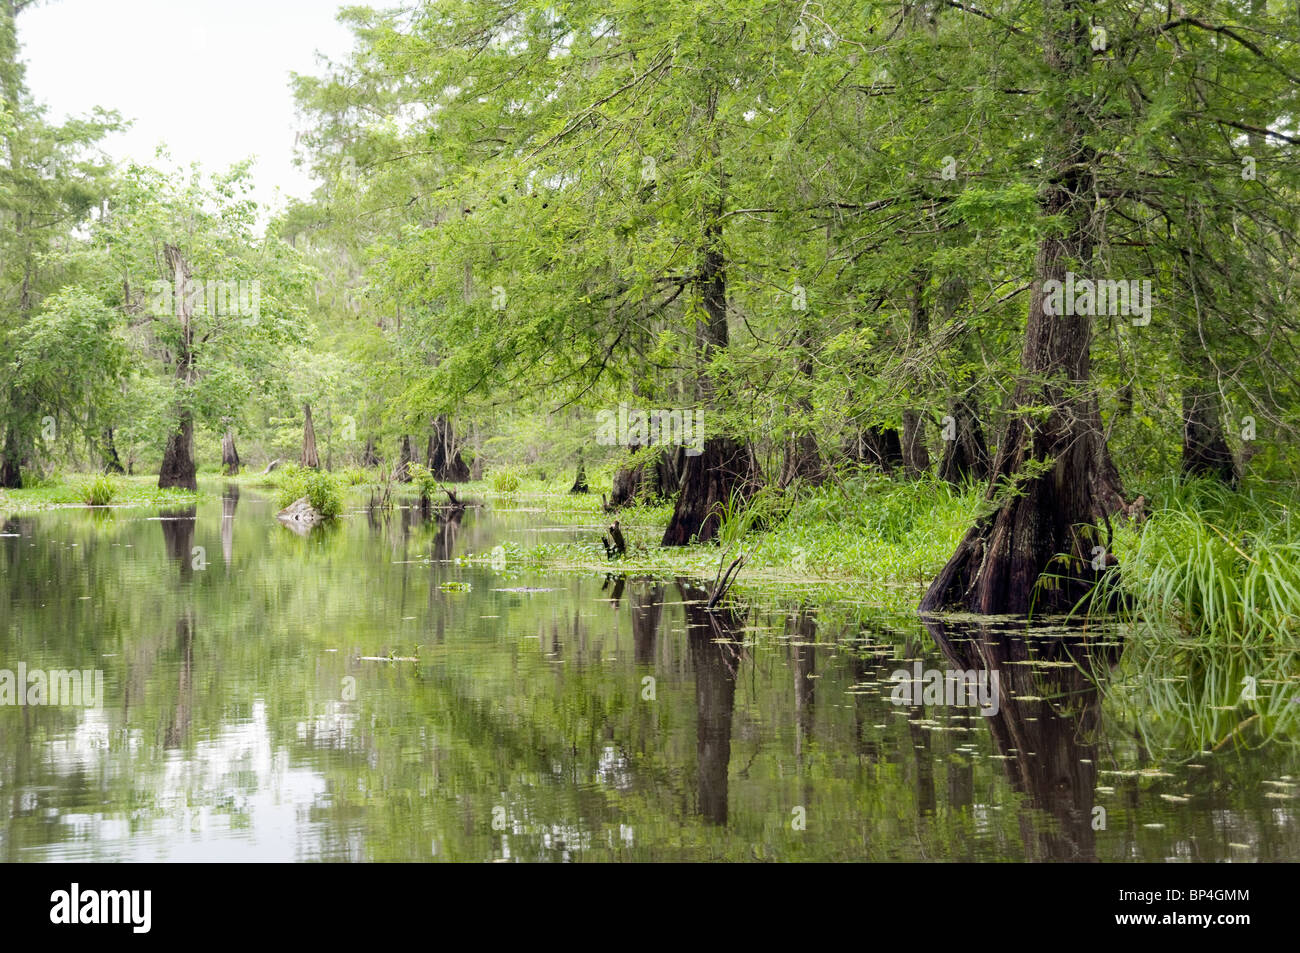 Les arbres et les marécages dans le lac Martin, une partie de l'île Cypress préserver, à l'extrémité ouest de la swamp Atchafalaya, près de Lafayette en Louisiane. Banque D'Images